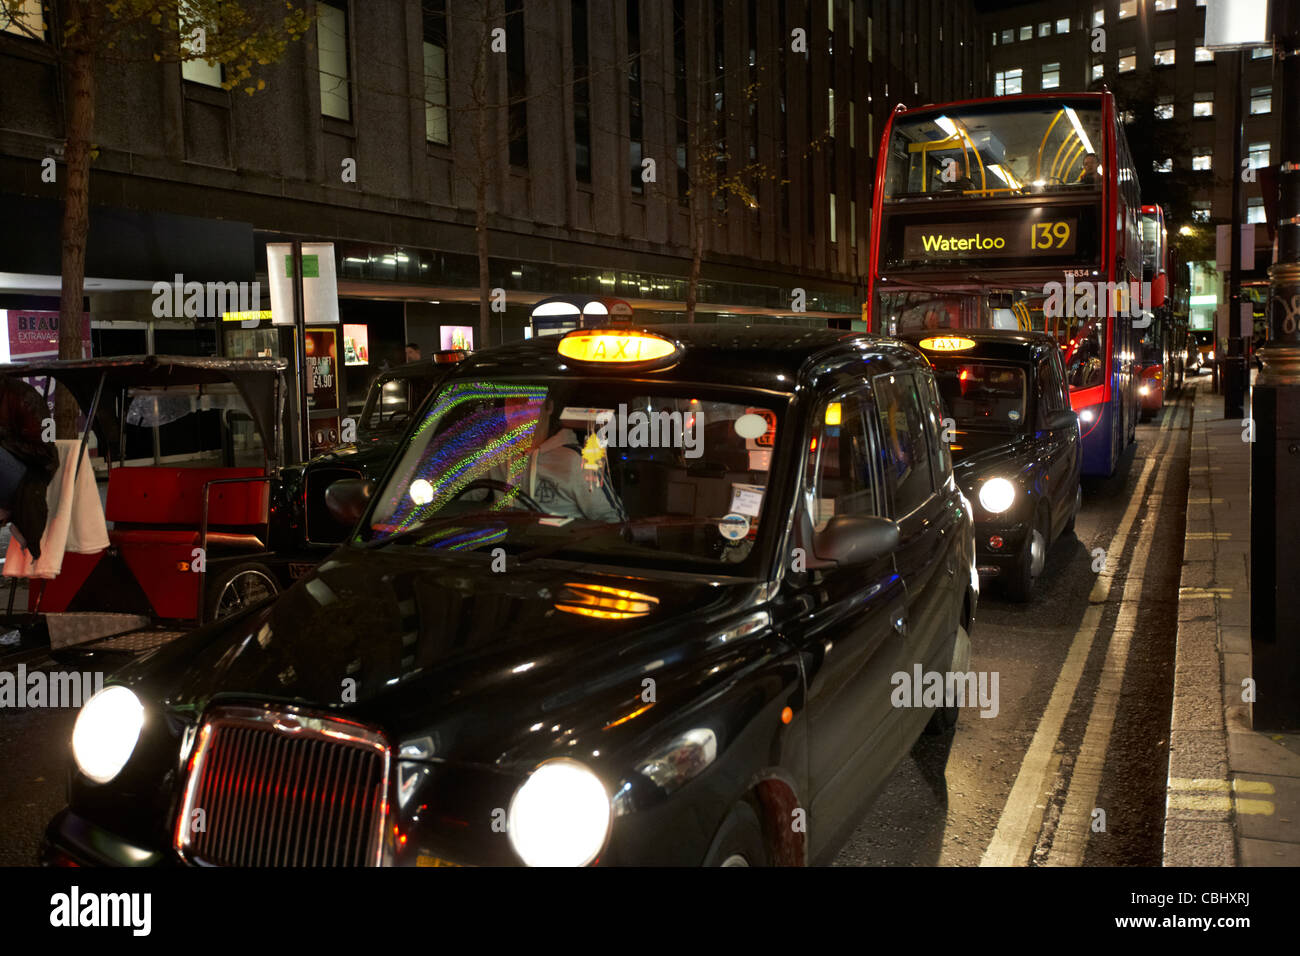 Rangée de taxis Les taxis de Londres noir et bus de nuit coincée dans la circulation sur rue commerçante dans le centre de Londres Angleterre Royaume-Uni uk Banque D'Images